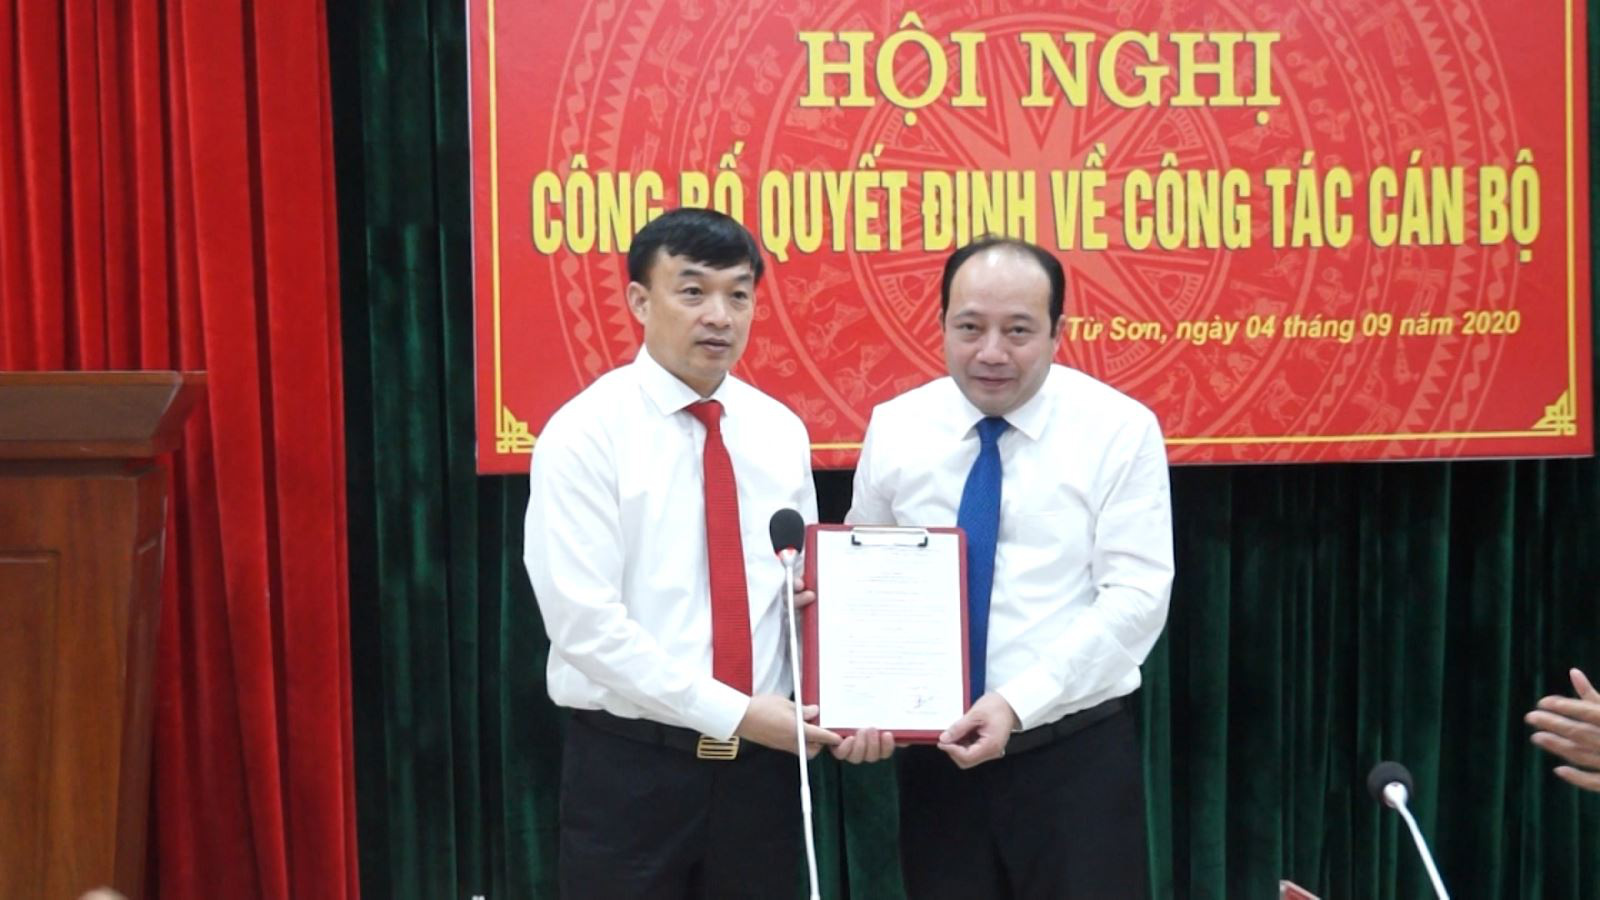 Bắc Ninh: Ông Hoàng Bá Huy được bầu giữ chức Chủ tịch UBND thị xã Từ Sơn - Ảnh 1.